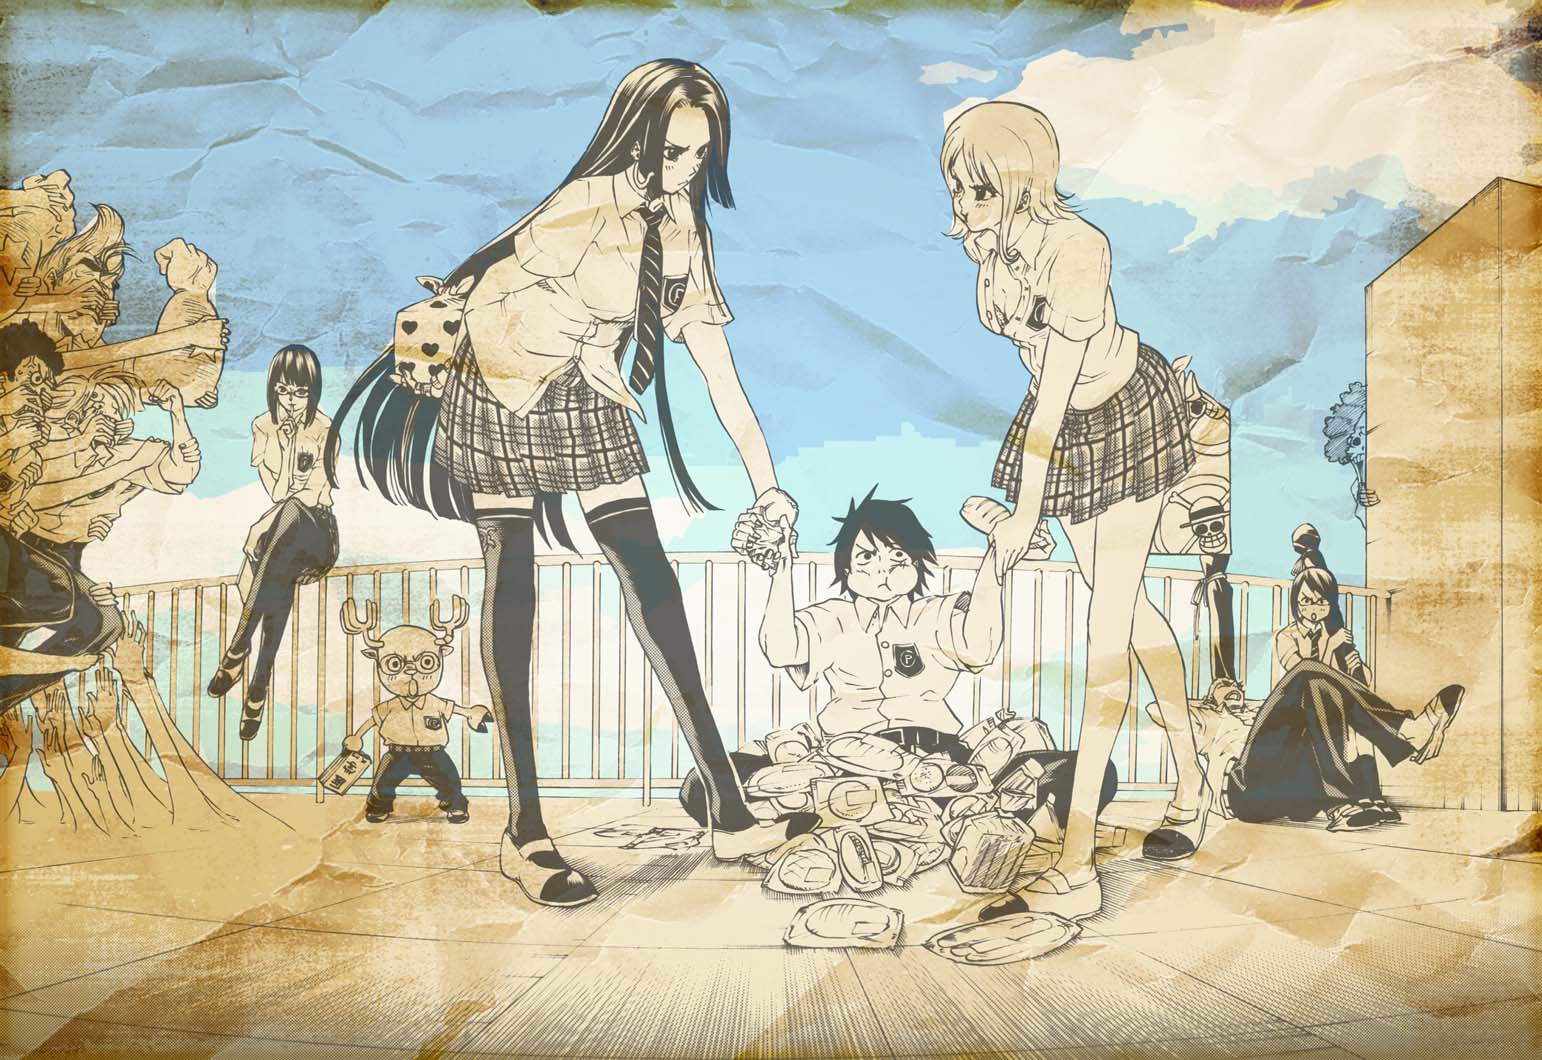 Популярные заставки и фоны Тасиги (One Piece) на компьютер